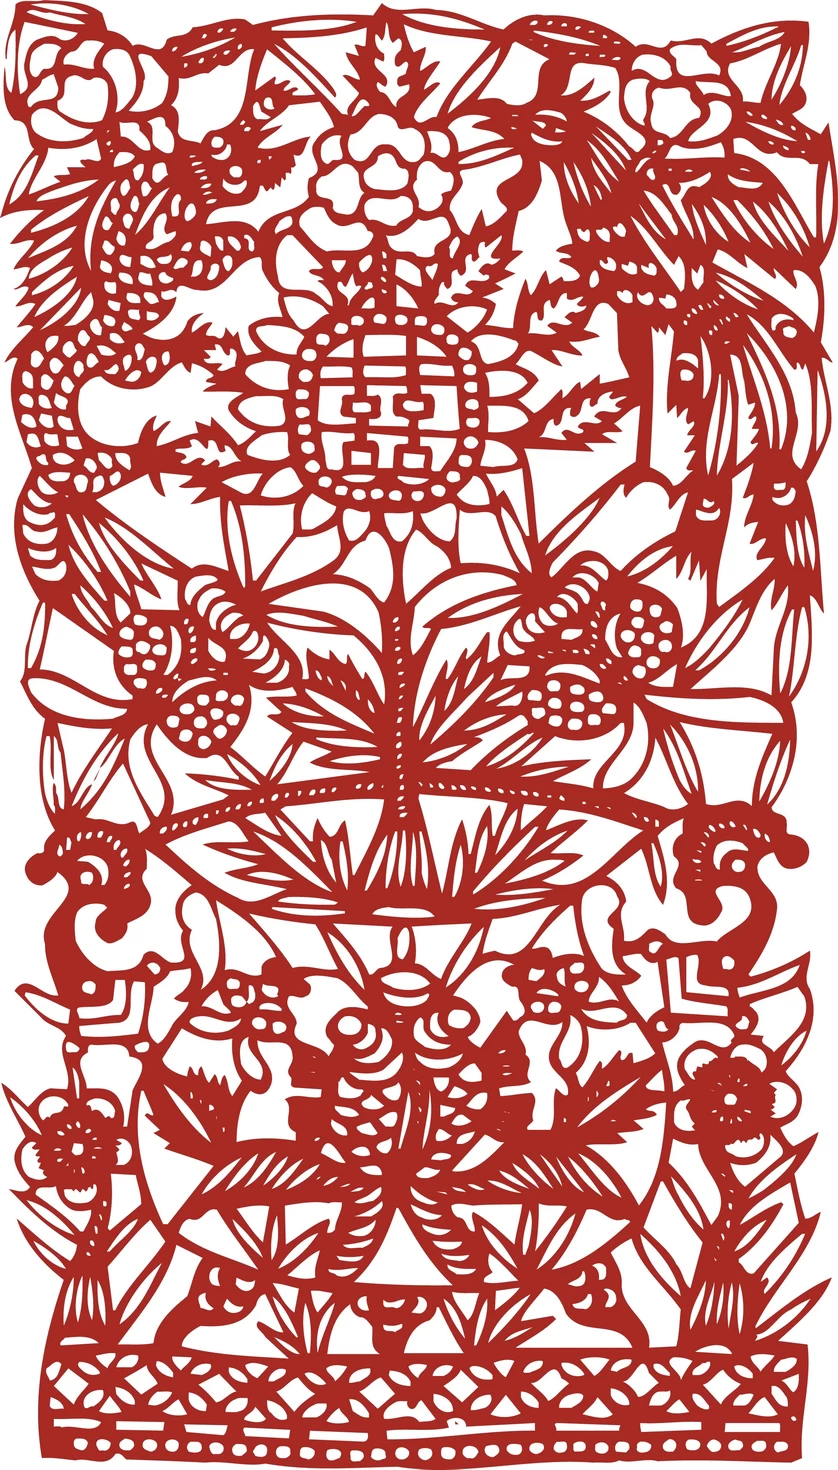 中国风中式传统喜庆民俗人物动物窗花剪纸插画边框AI矢量PNG素材【1488】